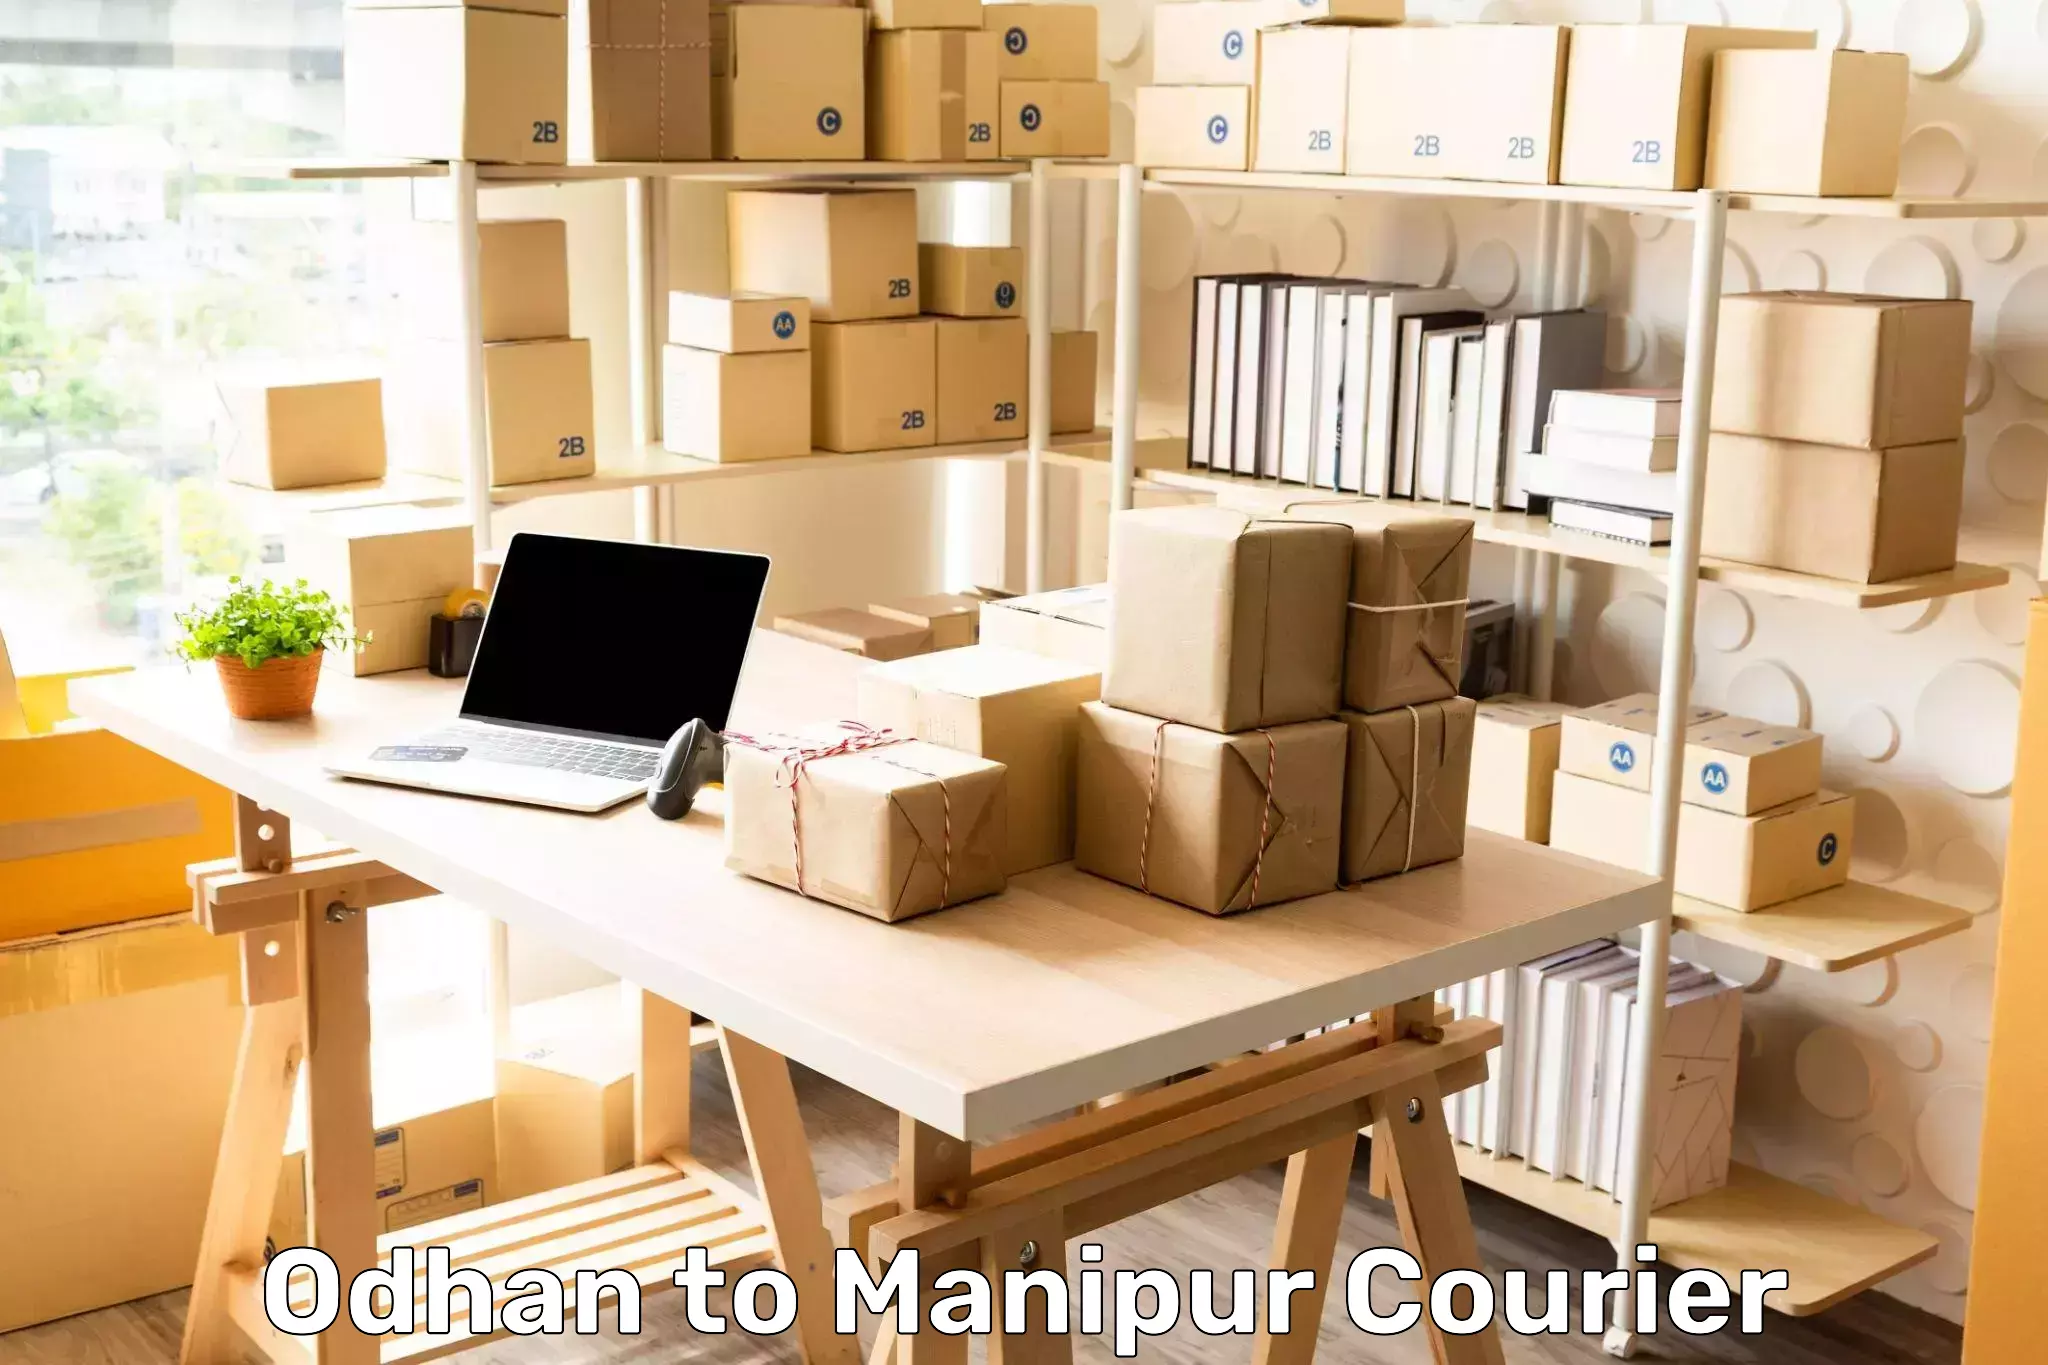 Door-to-door shipment Odhan to Manipur